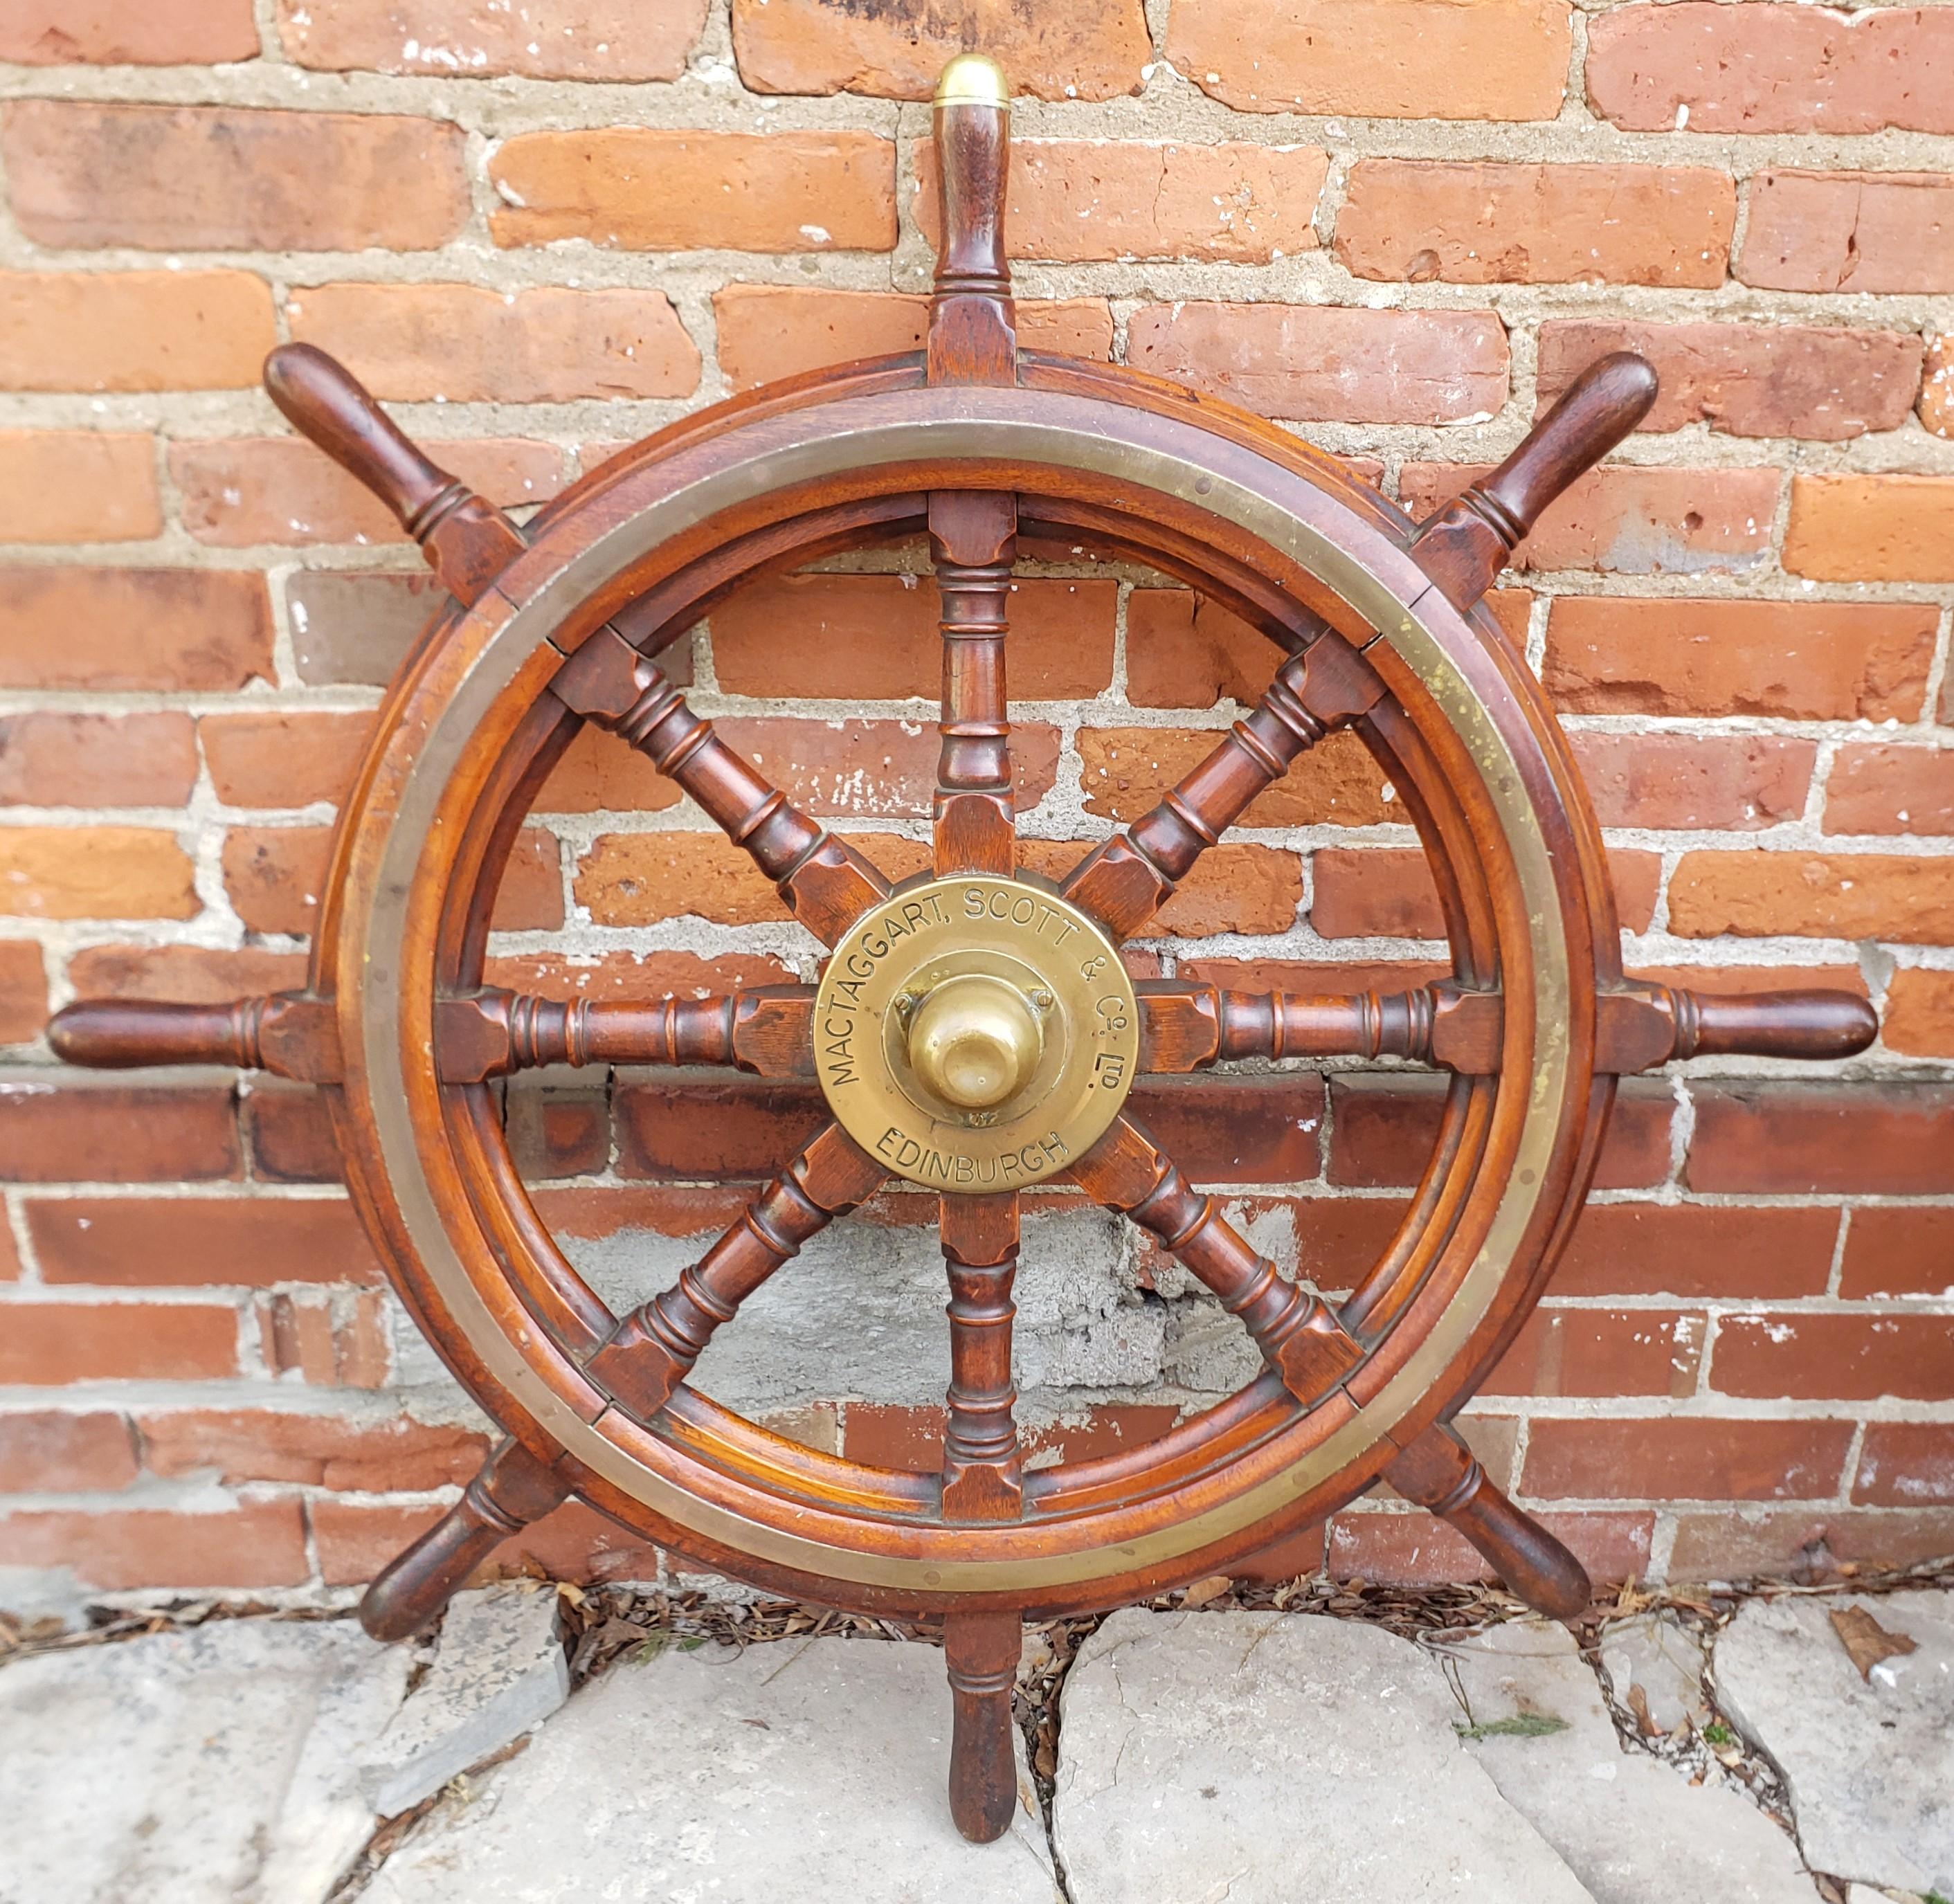 Cette roue de bateau antique a été fabriquée par MacTaggart, Scott & Co. d'Edenborough, en Écosse. Elle date d'environ 1900 et a été réalisée dans le style de l'époque. Cette roue de bateau est composée de chêne massif avec un moyeu en laiton